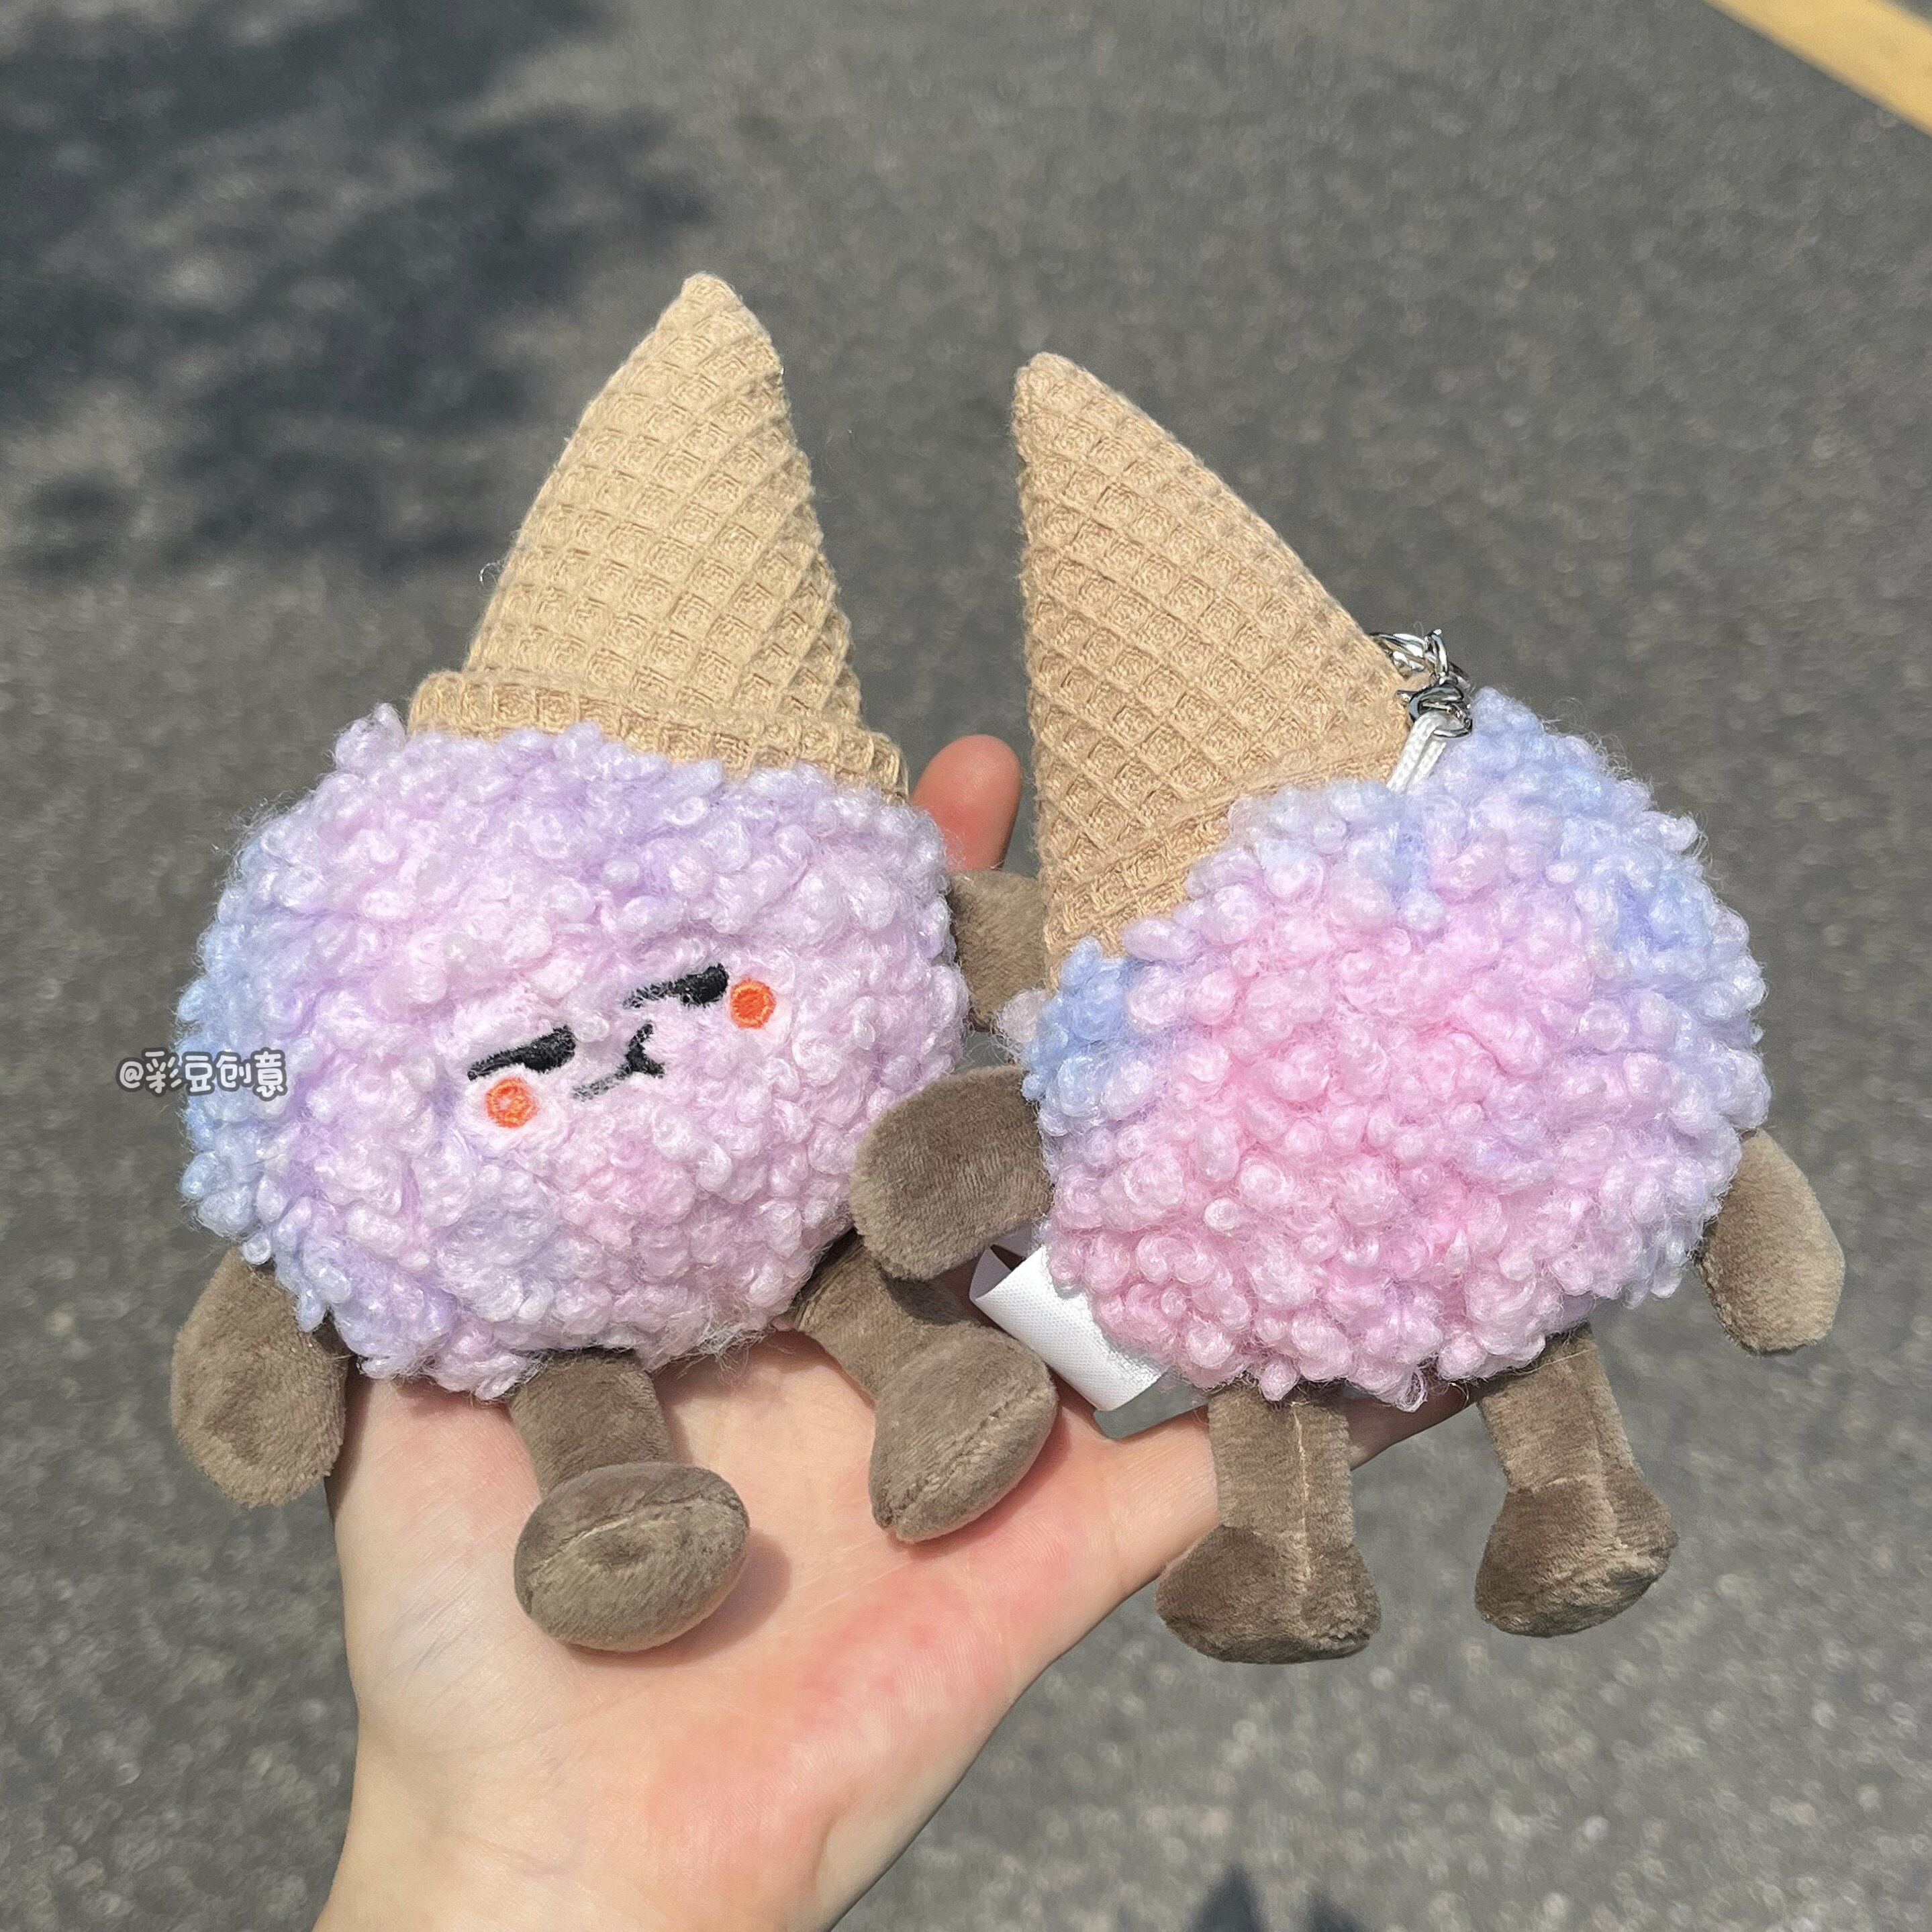 Ice Cream Plush Toys